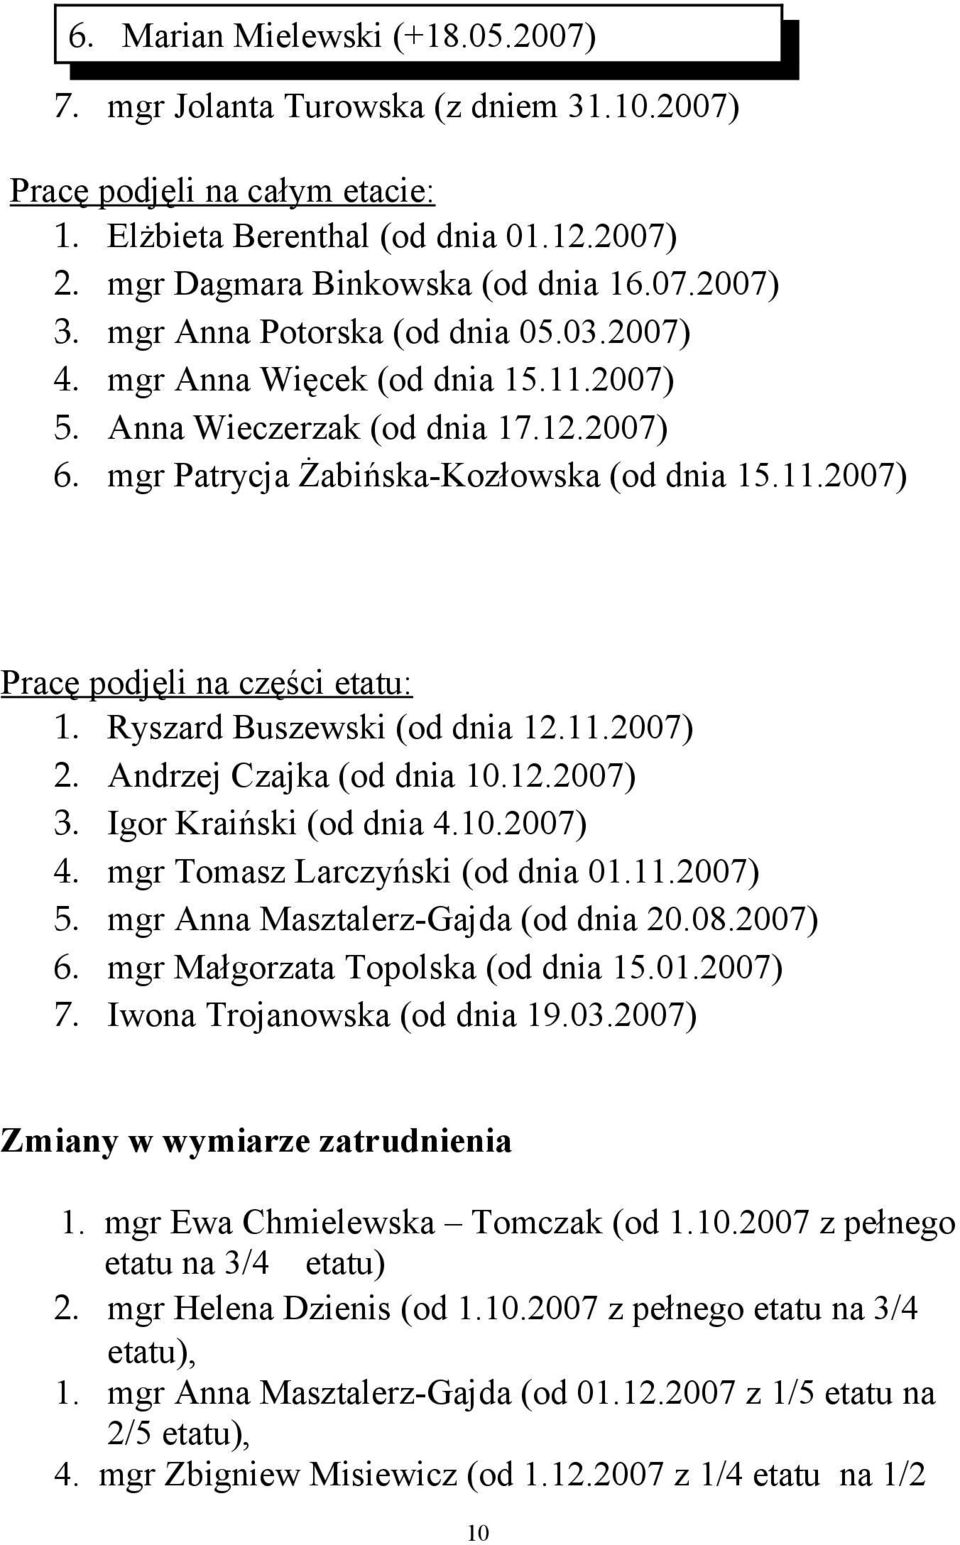 Ryszard Buszewski (od dnia 12.11.2007) 2. Andrzej Czajka (od dnia 10.12.2007) 3. Igor Kraiński (od dnia 4.10.2007) 4. mgr Tomasz Larczyński (od dnia 01.11.2007) 5.